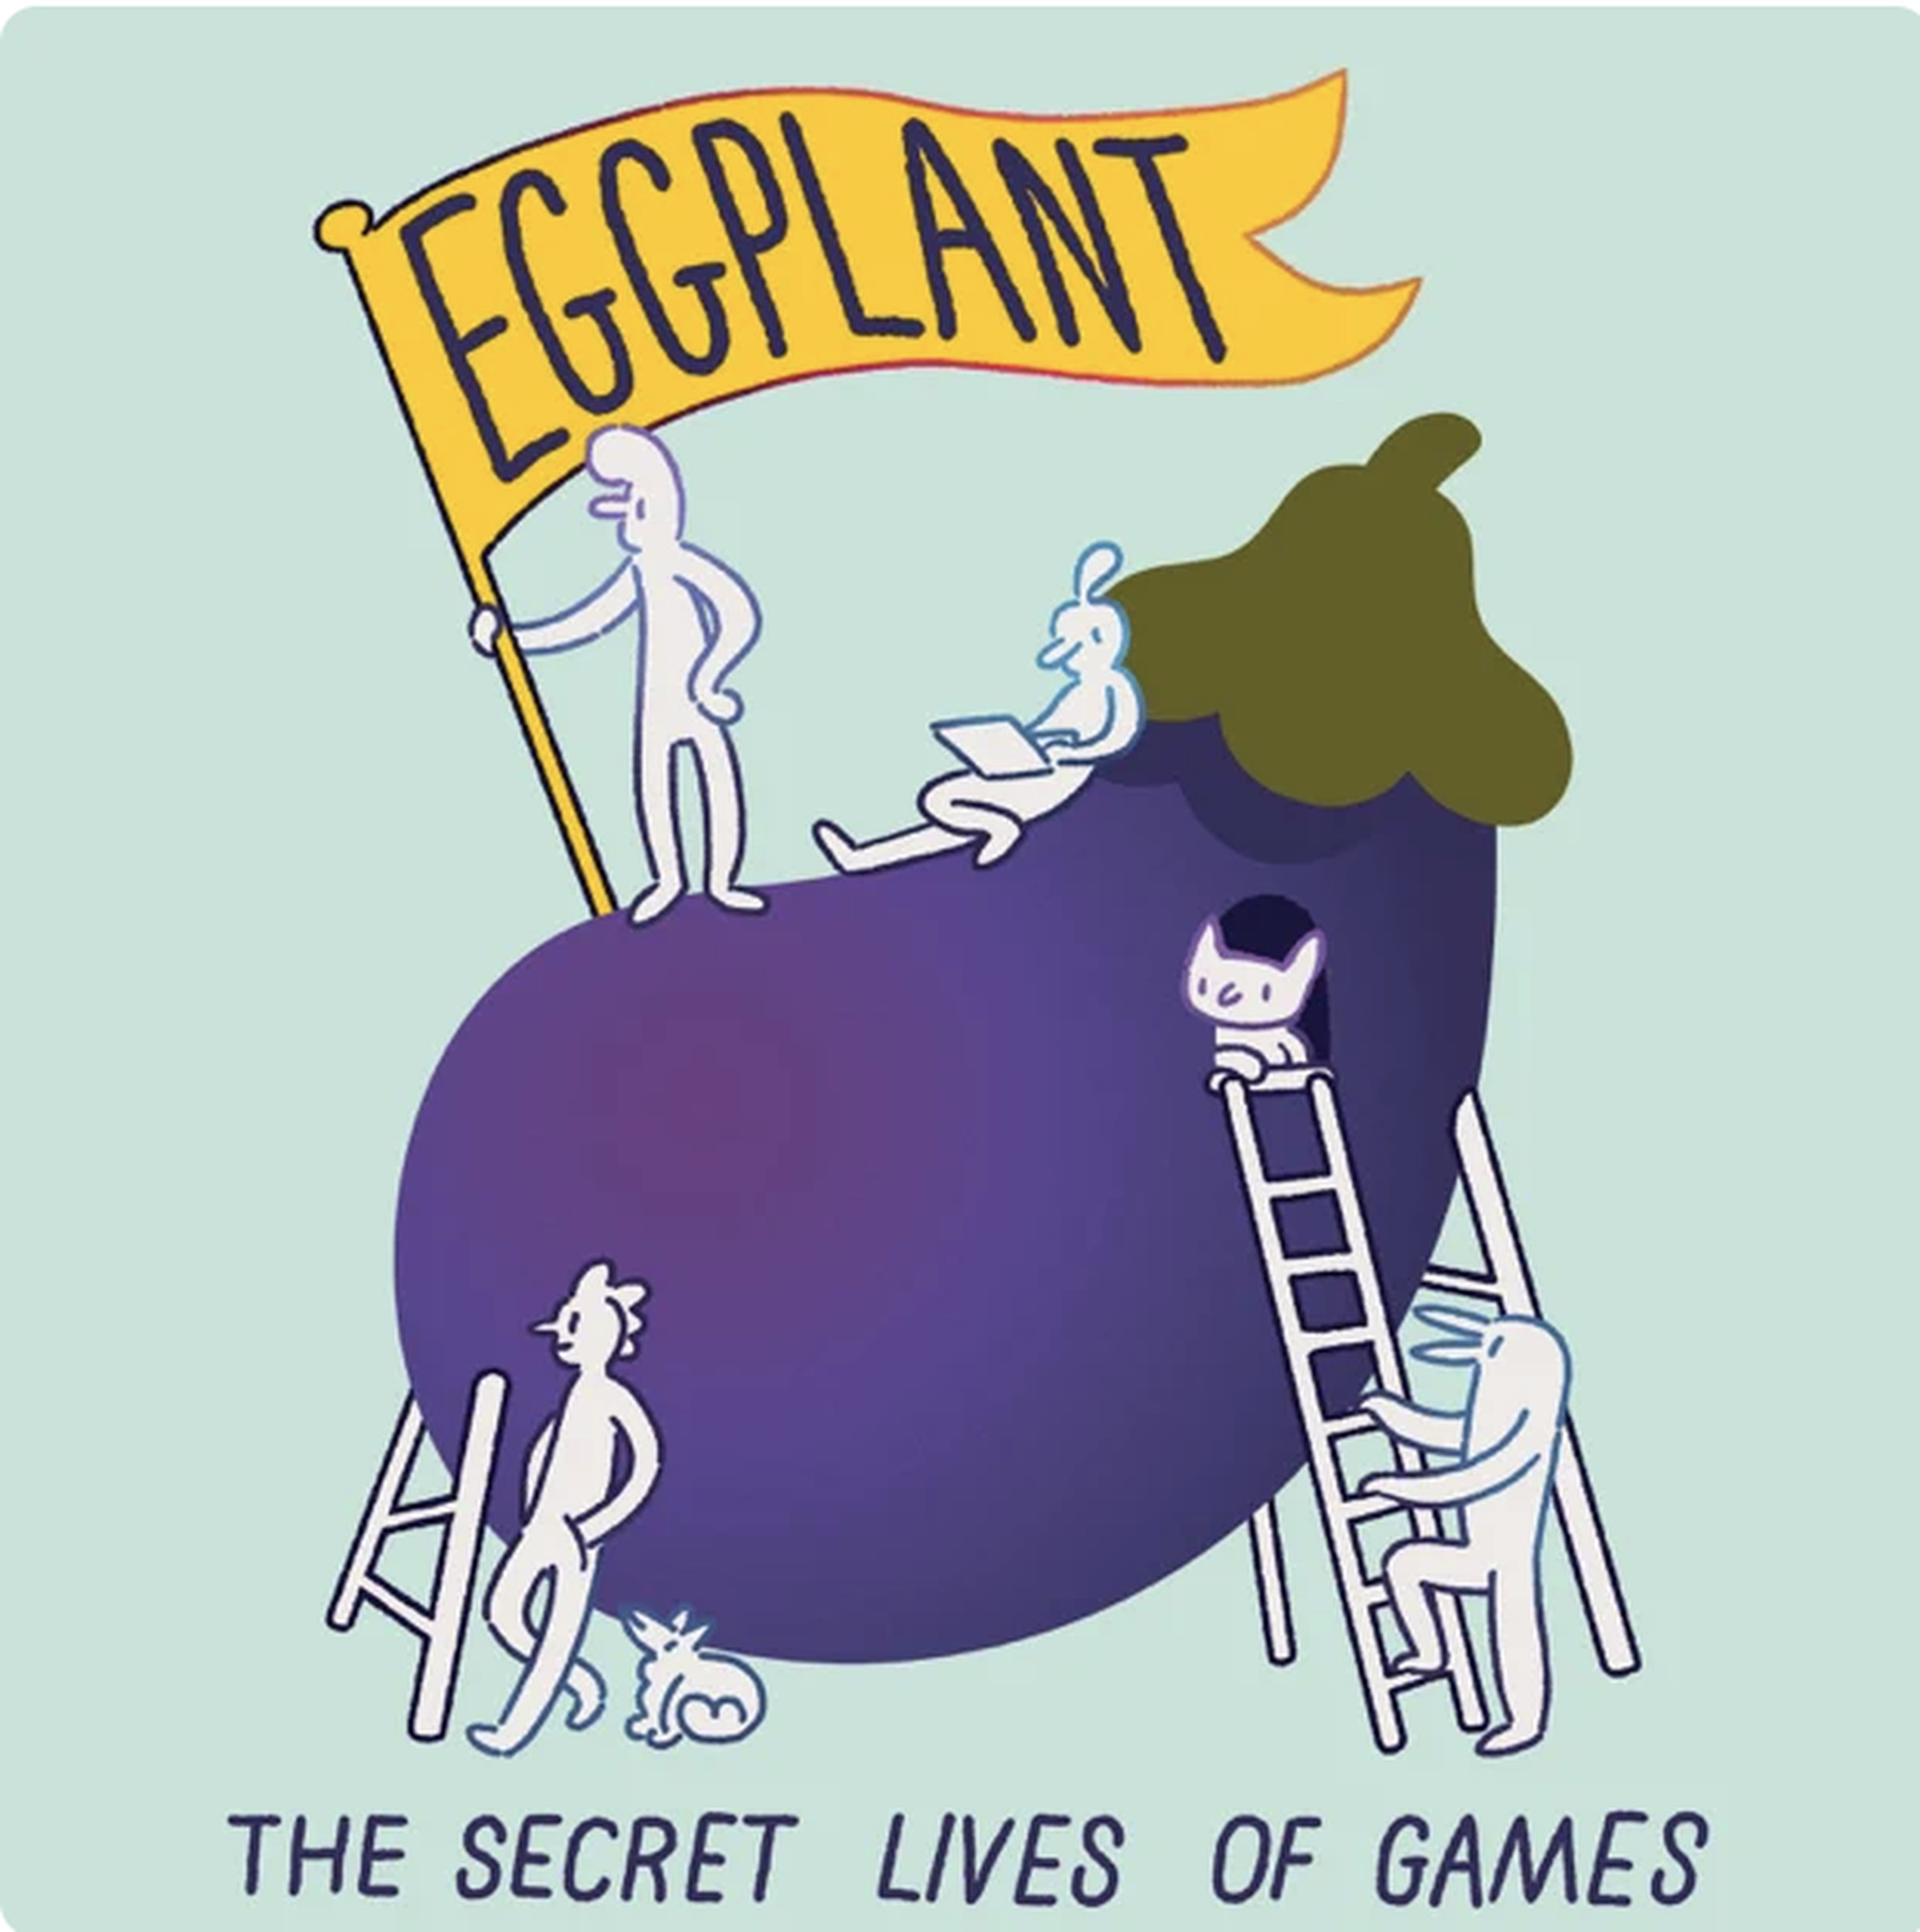 Eggplant: The Secret Lives of Games 